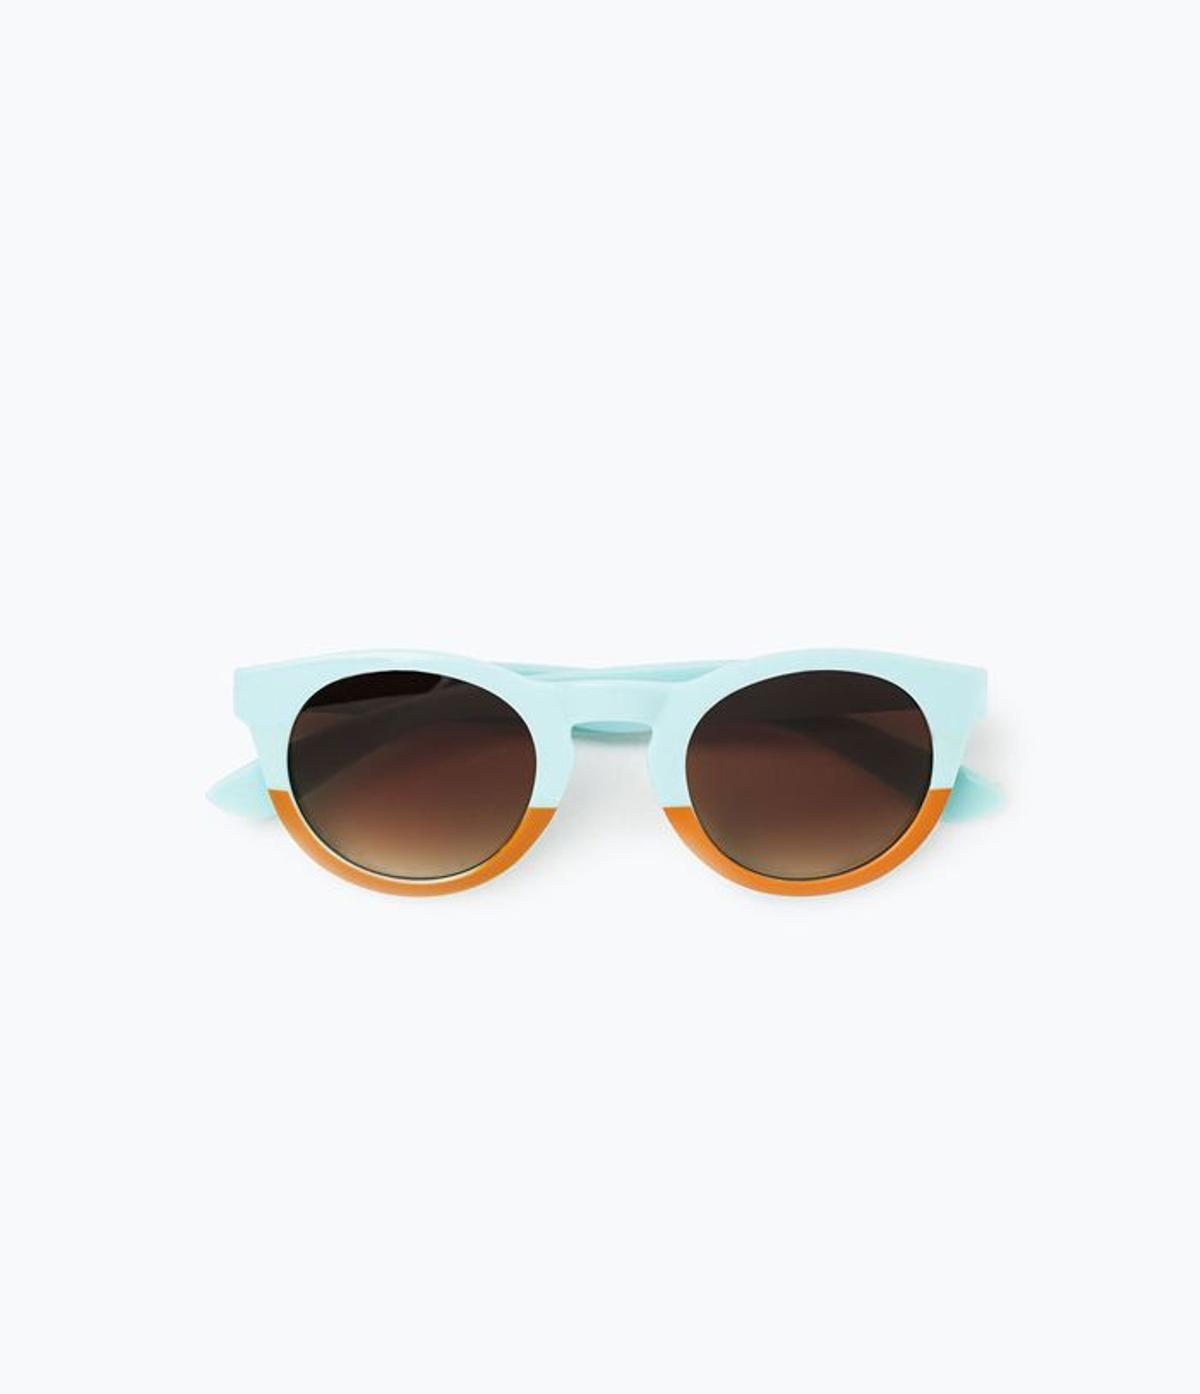 Rebajas Zara 2015, gafas de sol